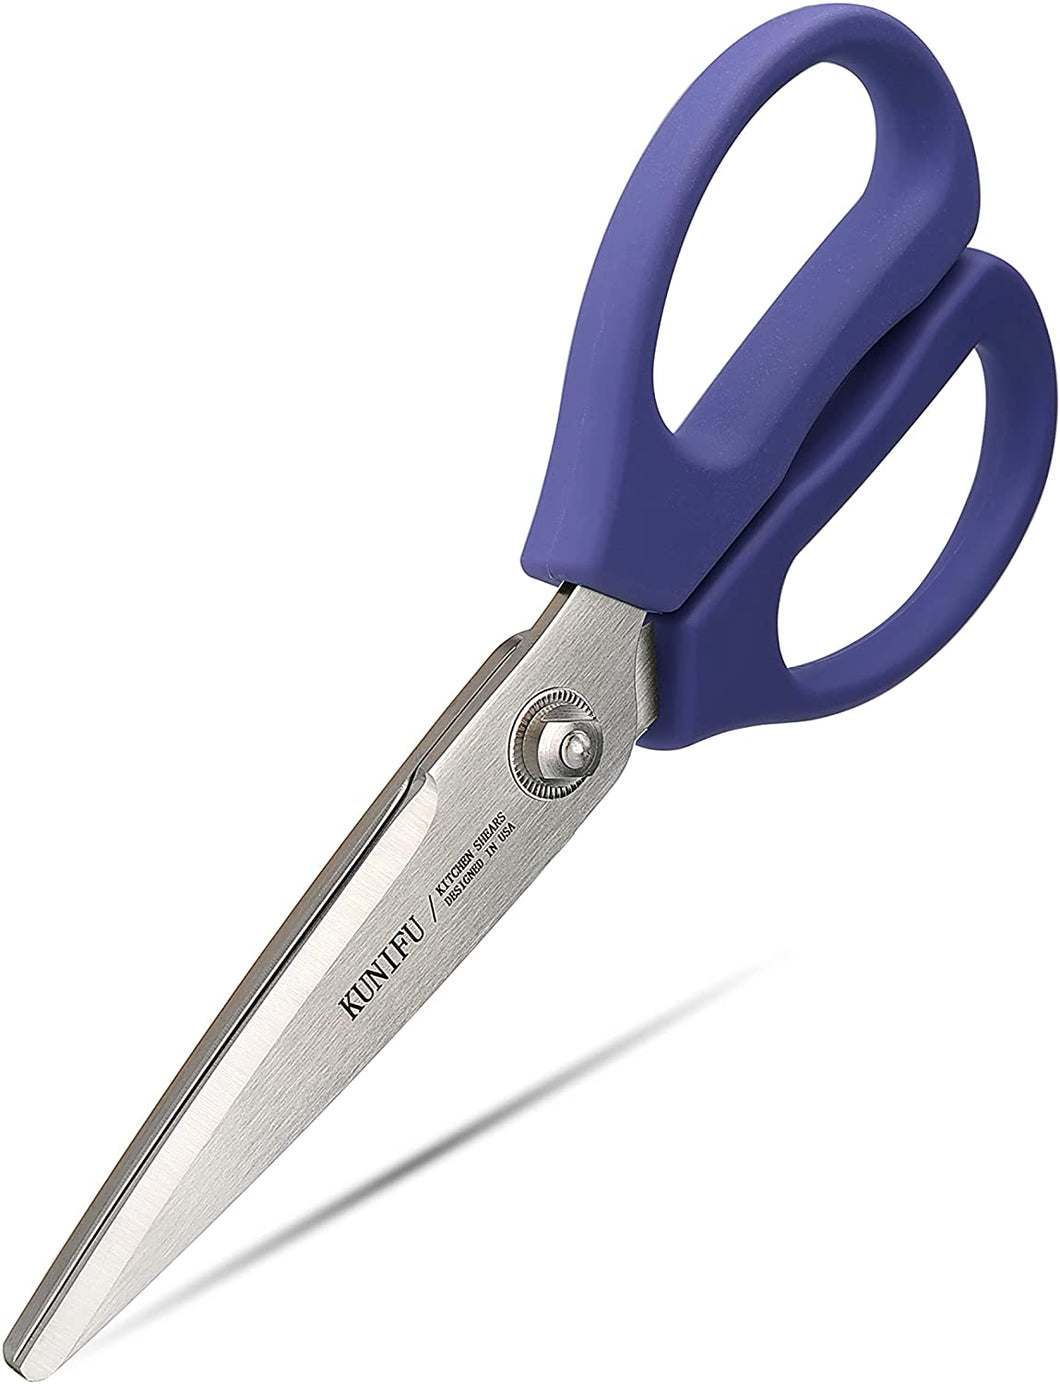 KUNIFU Kitchen Scissors All Purpose Heavy Duty BLUE